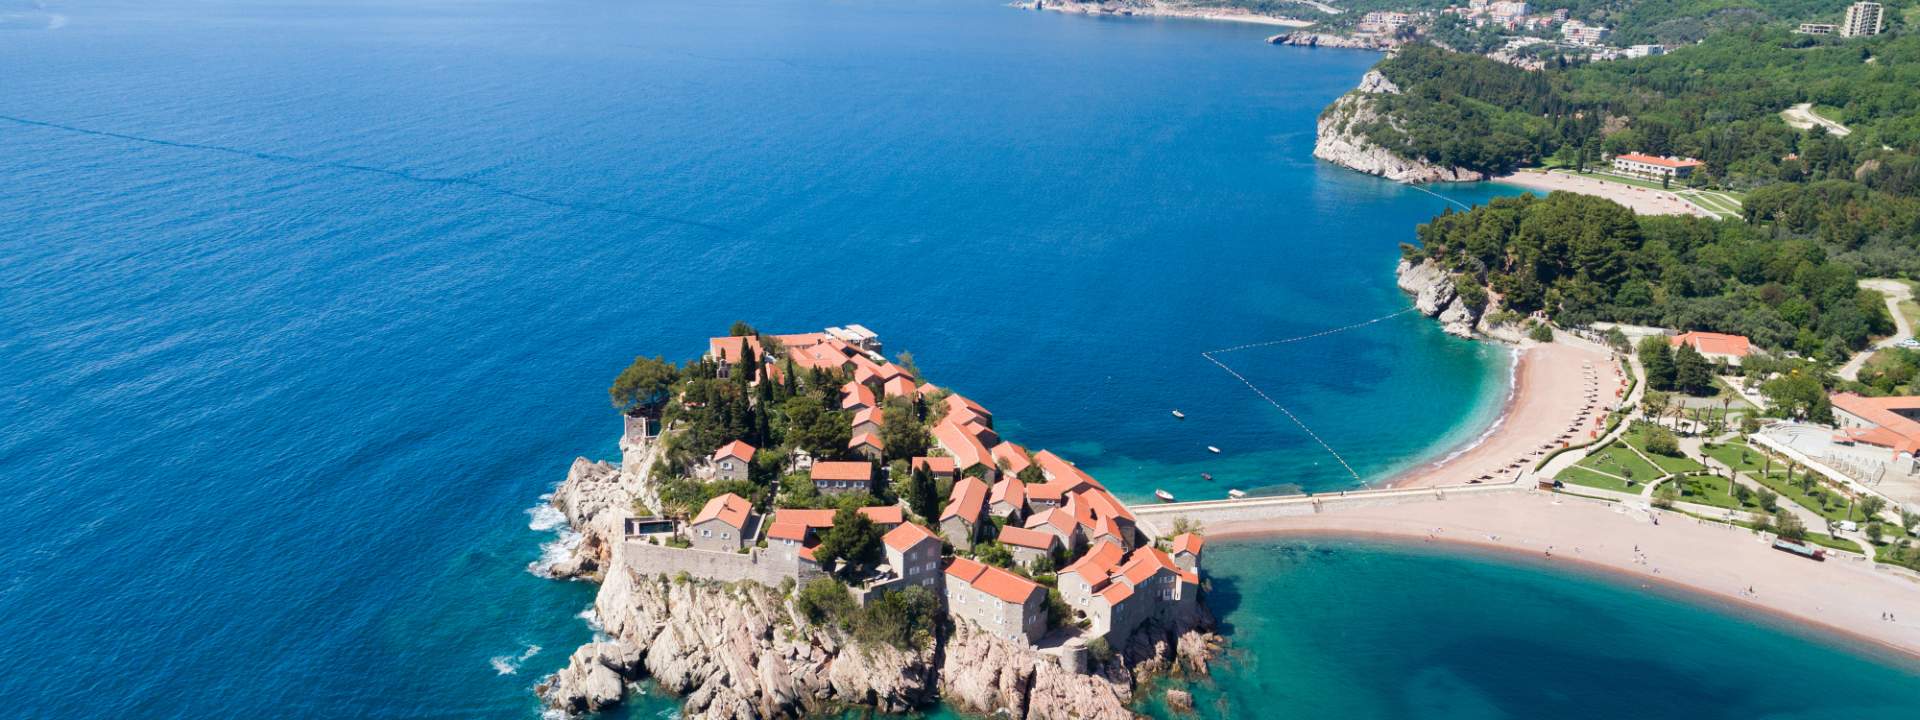 Odkryj Czarnogórę i piękno Zatoki Kotorskiej podczas rejsu guletem